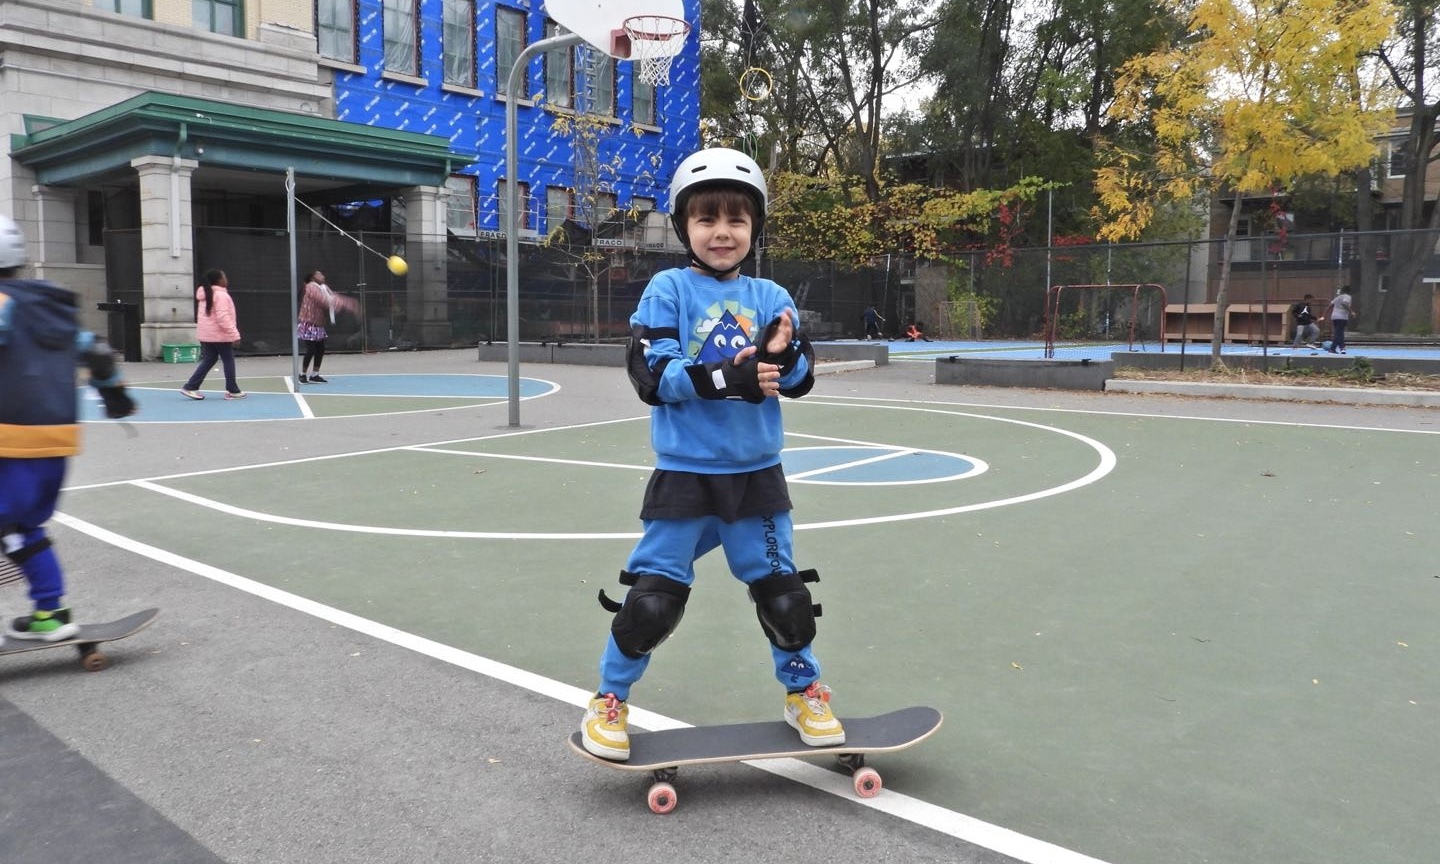 Équipement de protection pour skateboard, planche à roulettes